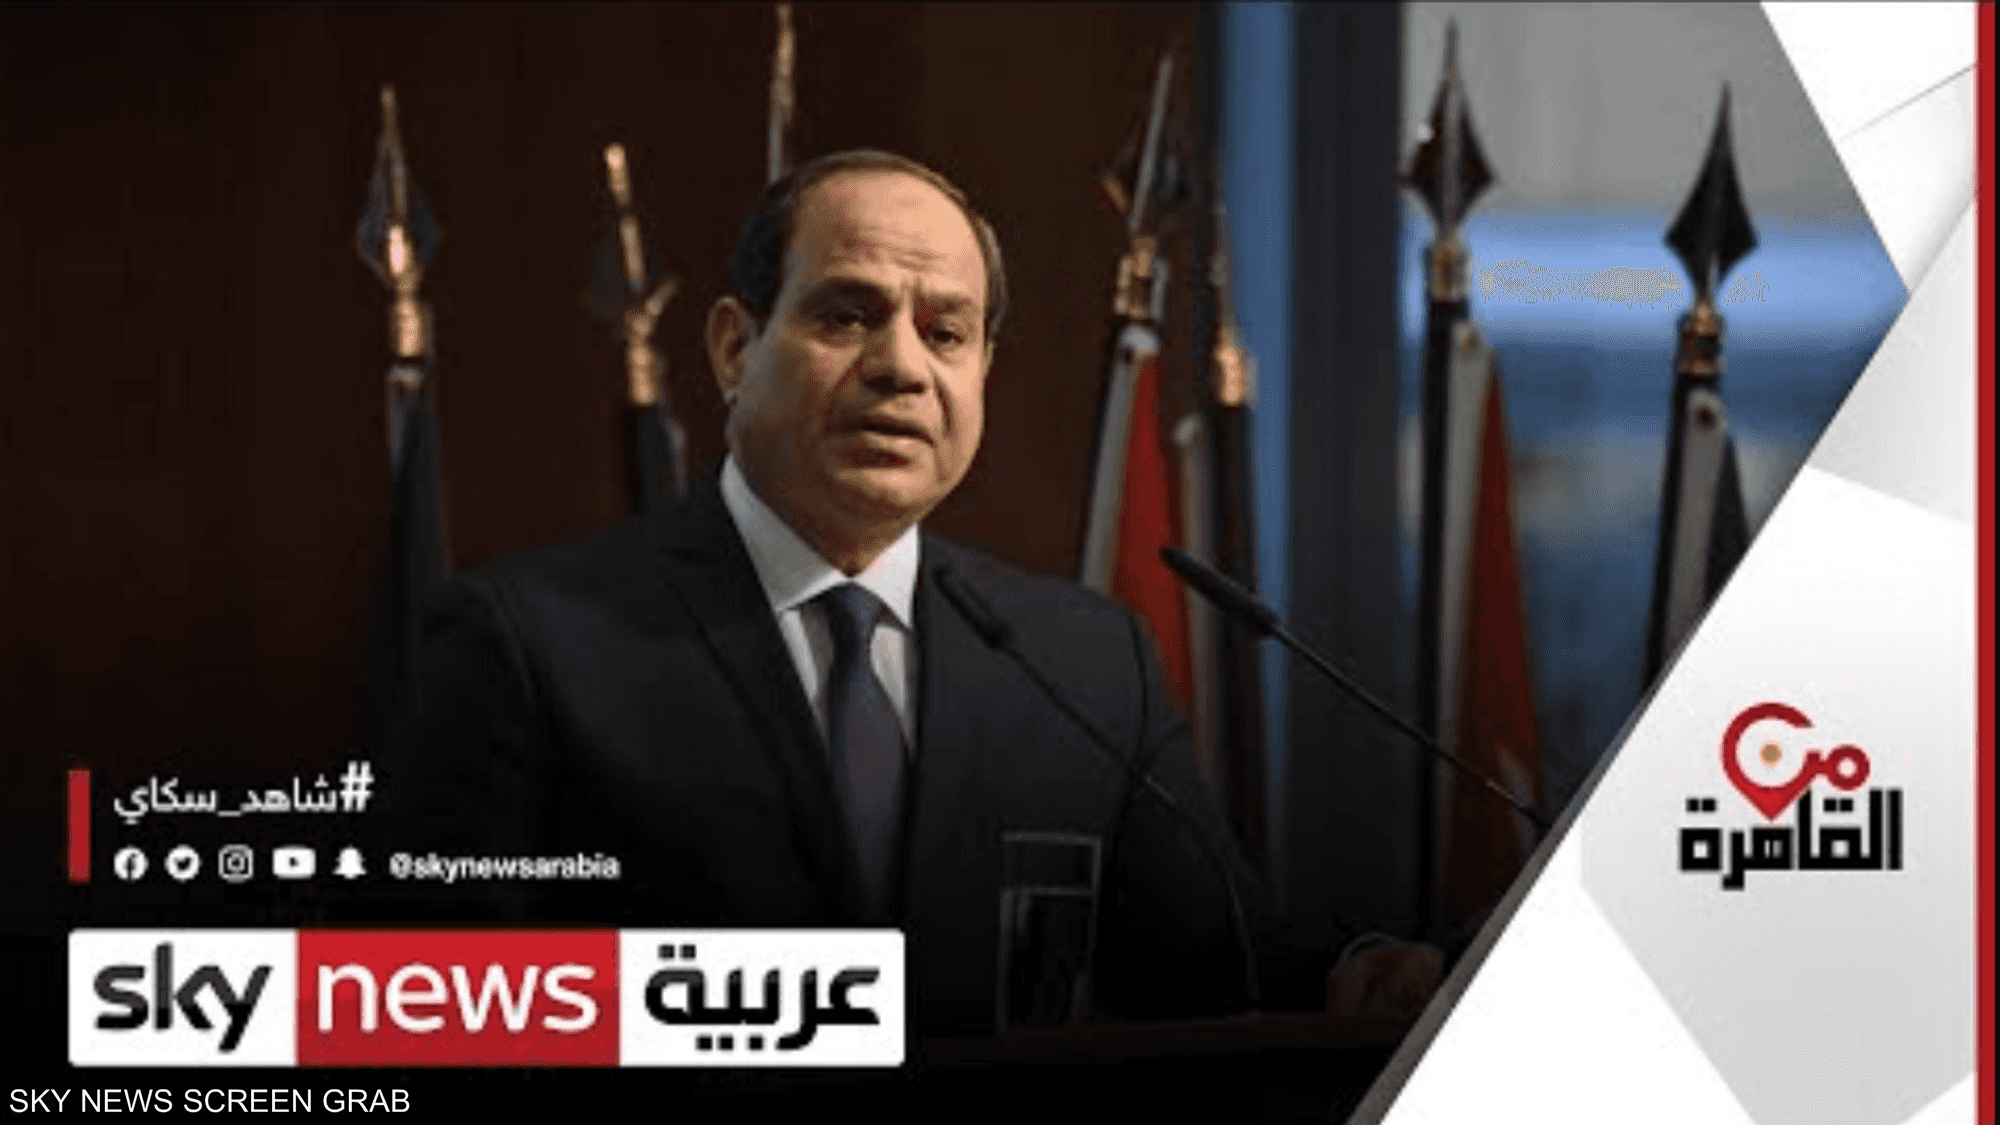 الرئيس المصري يعلن 2022 عاما للمجتمع المدني